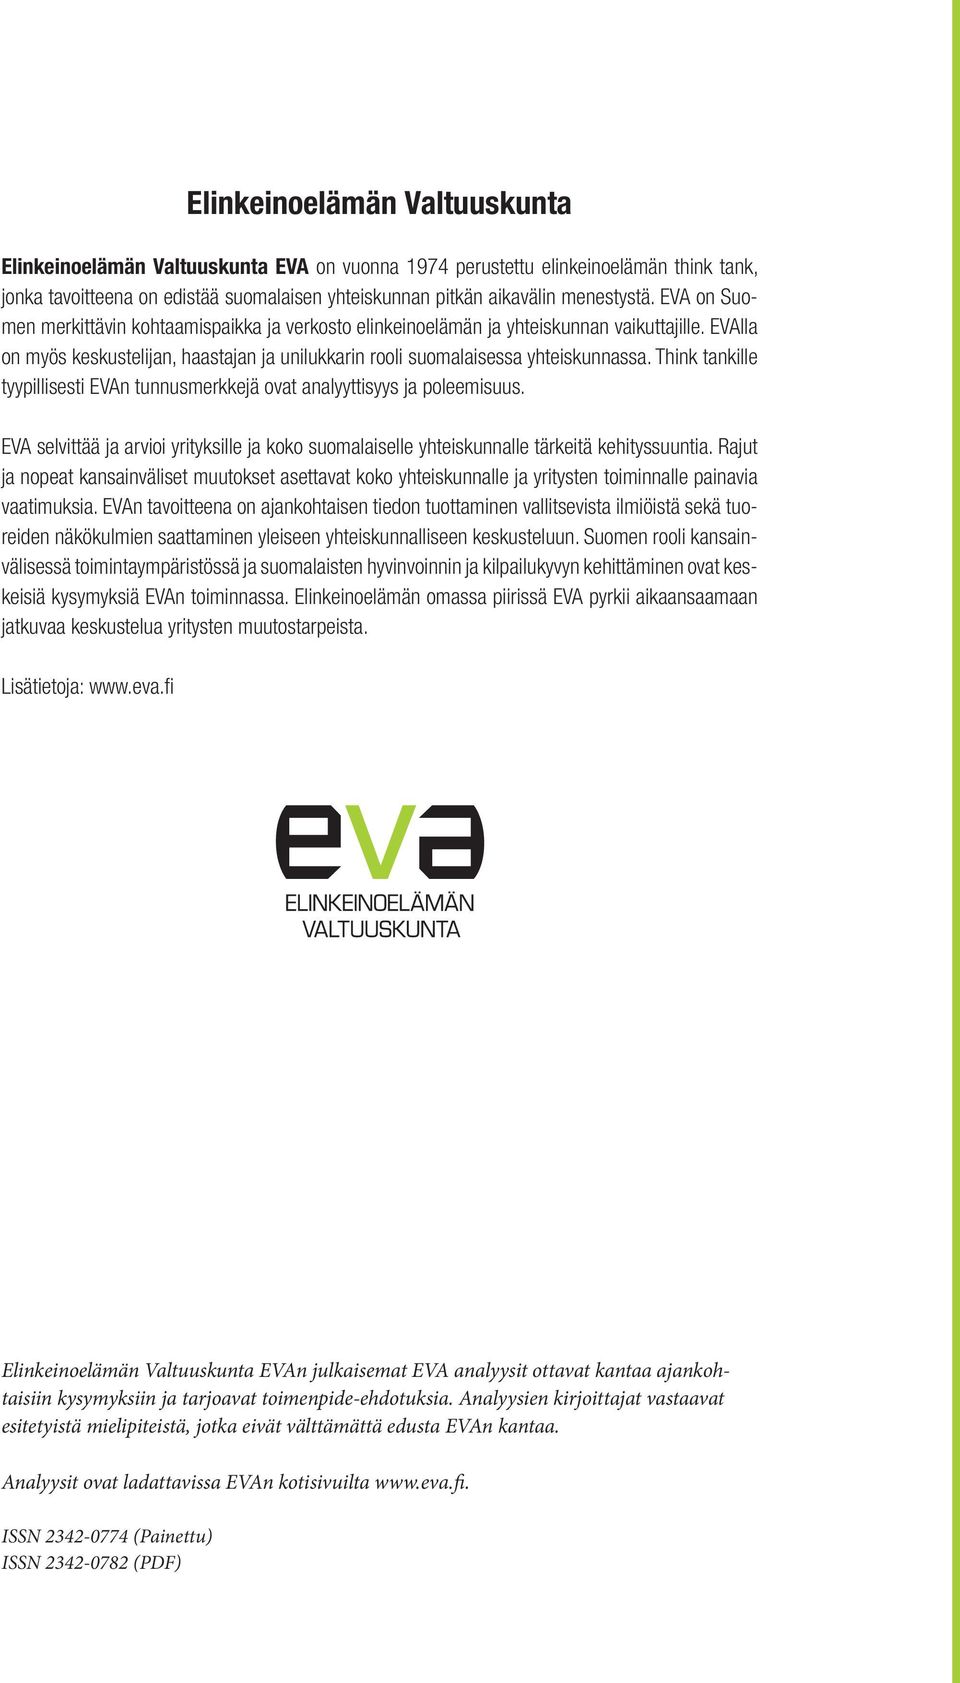 Think tankille tyypillisesti EVAn tunnusmerkkejä ovat analyyttisyys ja poleemisuus. EVA selvittää ja arvioi yrityksille ja koko suomalaiselle yhteiskunnalle tärkeitä kehityssuuntia.